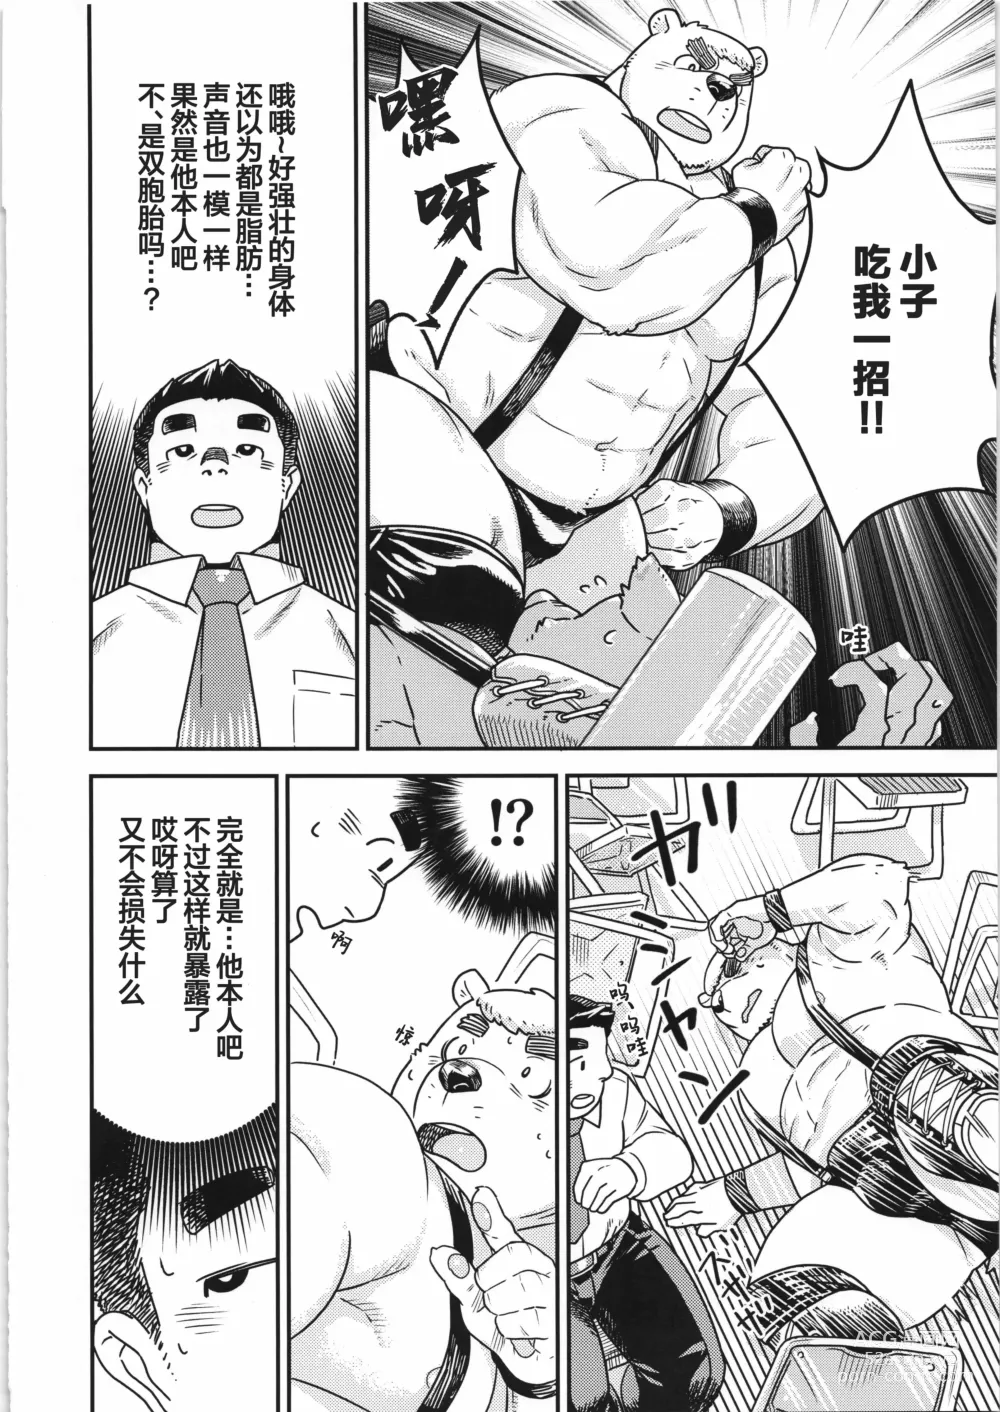 Page 11 of manga CHOGOKIN-004